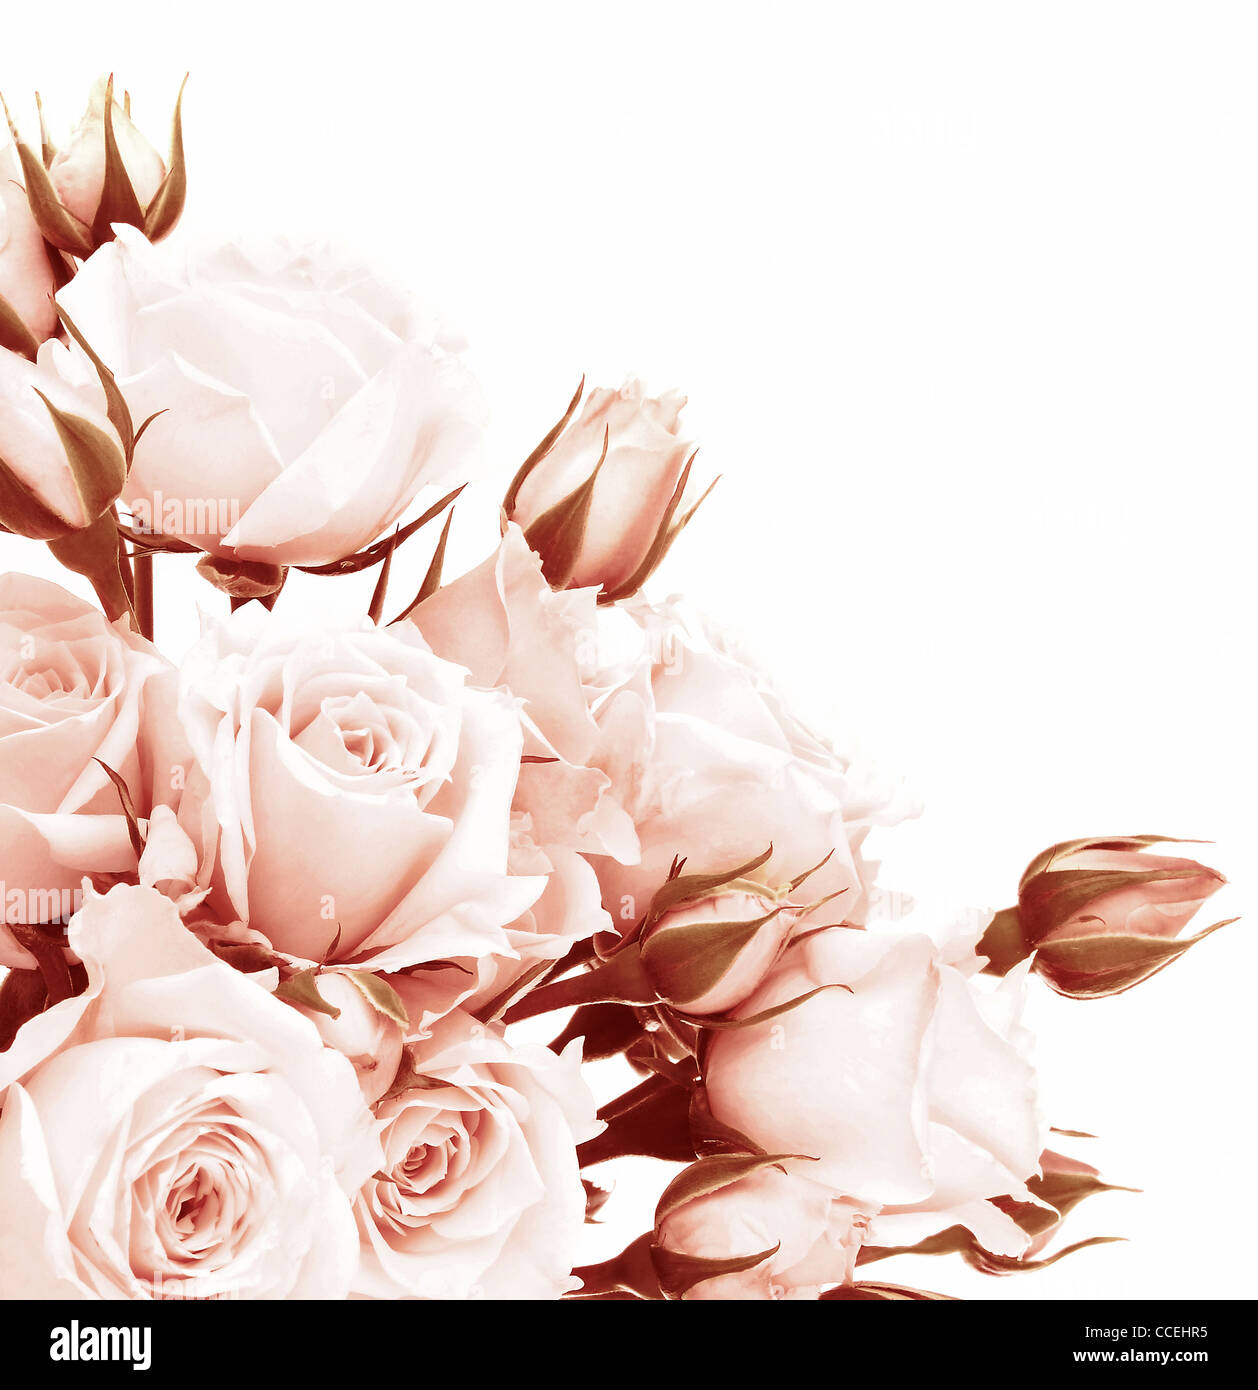 Frische rosa Rosen Grenze, schöne isoliert auf weißen Blüten, Ecke Zusammensetzung, Weihnachtsgeschenk rose, Liebe Konzept Stockfoto